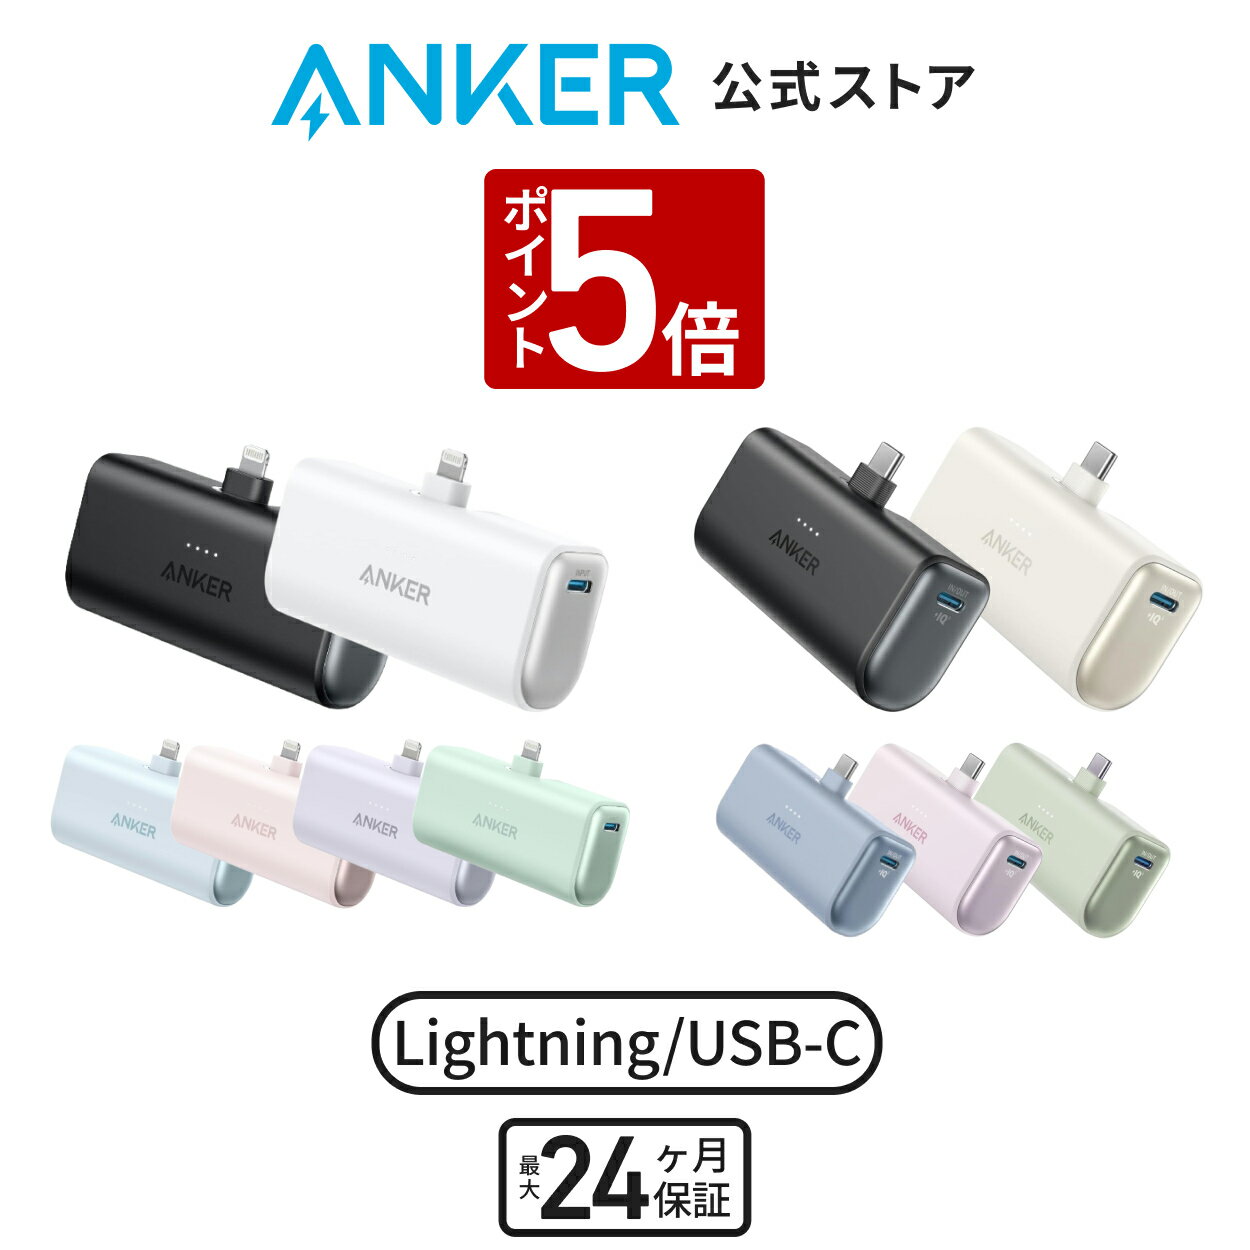 【P5倍 2/15まで】【一部あす楽対応】Anker Nano Power Bank (12W, Built-In Lightning Connector) (モバイルバッテリー 5000mAh 小型コンパクト)【MFi認証済/PowerIQ搭載/ライトニング端子一体型】 iPhone 14 / 13 / 12 シリーズ